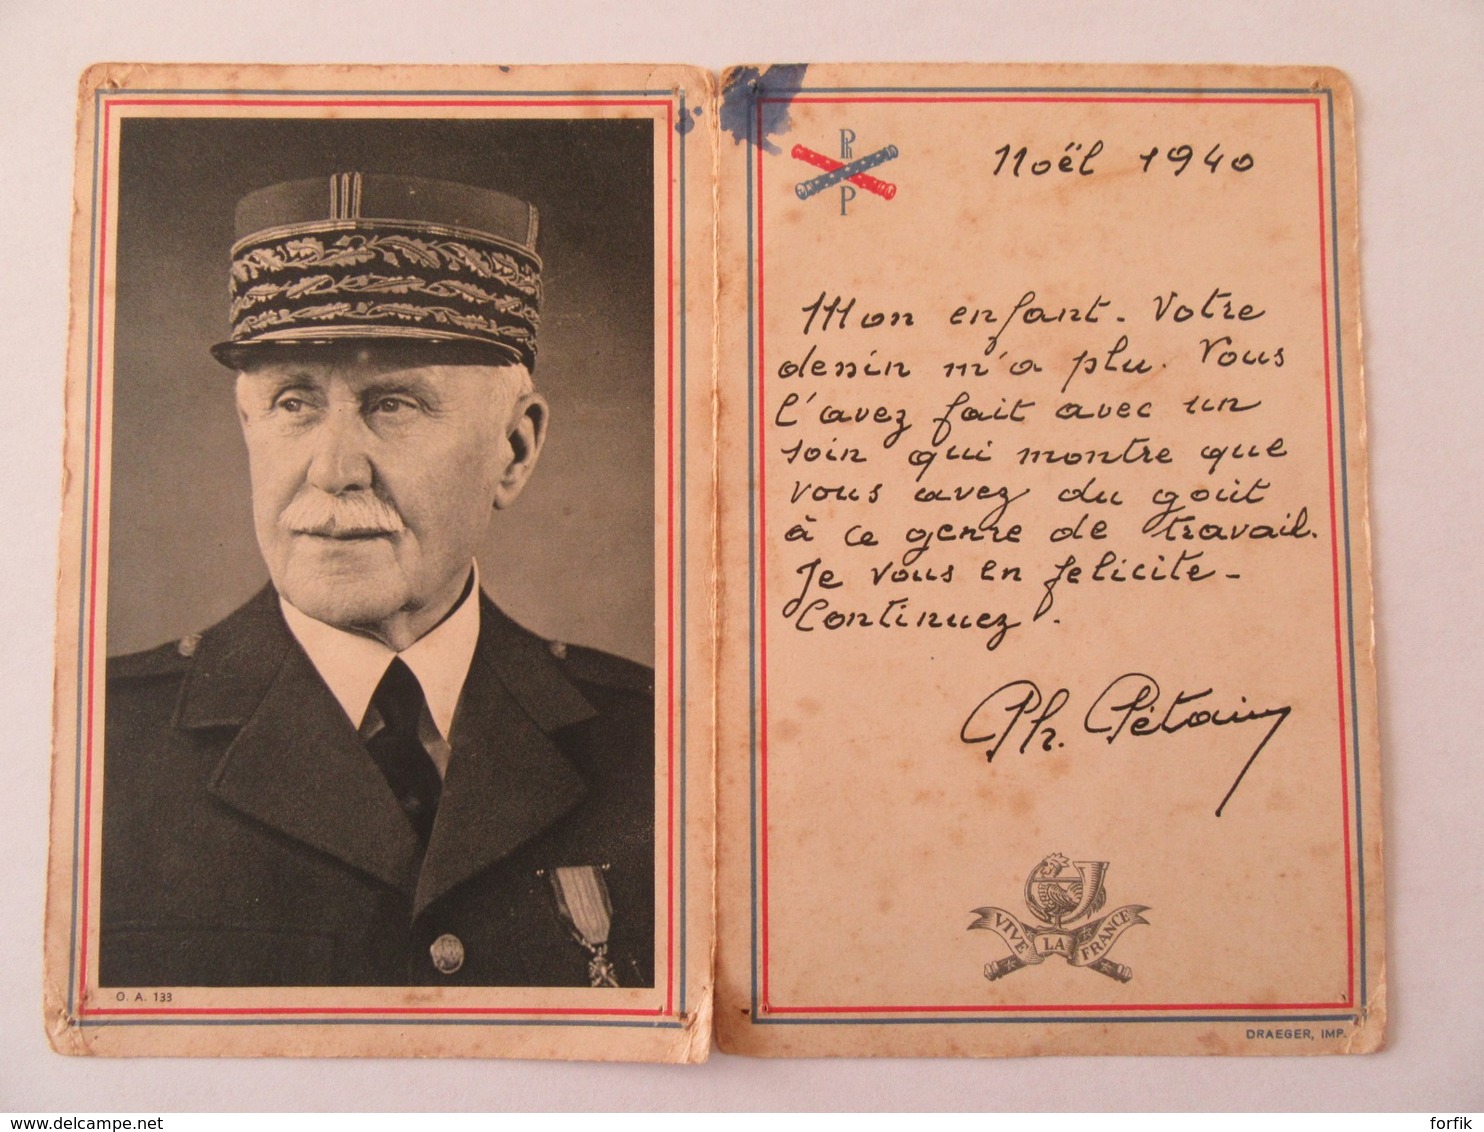 Carte Postale Ouvrante - Maréchal Pétain Avec Un Texte Imprimé Pour Noël 1940 - Propagande - Cachet Vichy 1941 - Uomini Politici E Militari